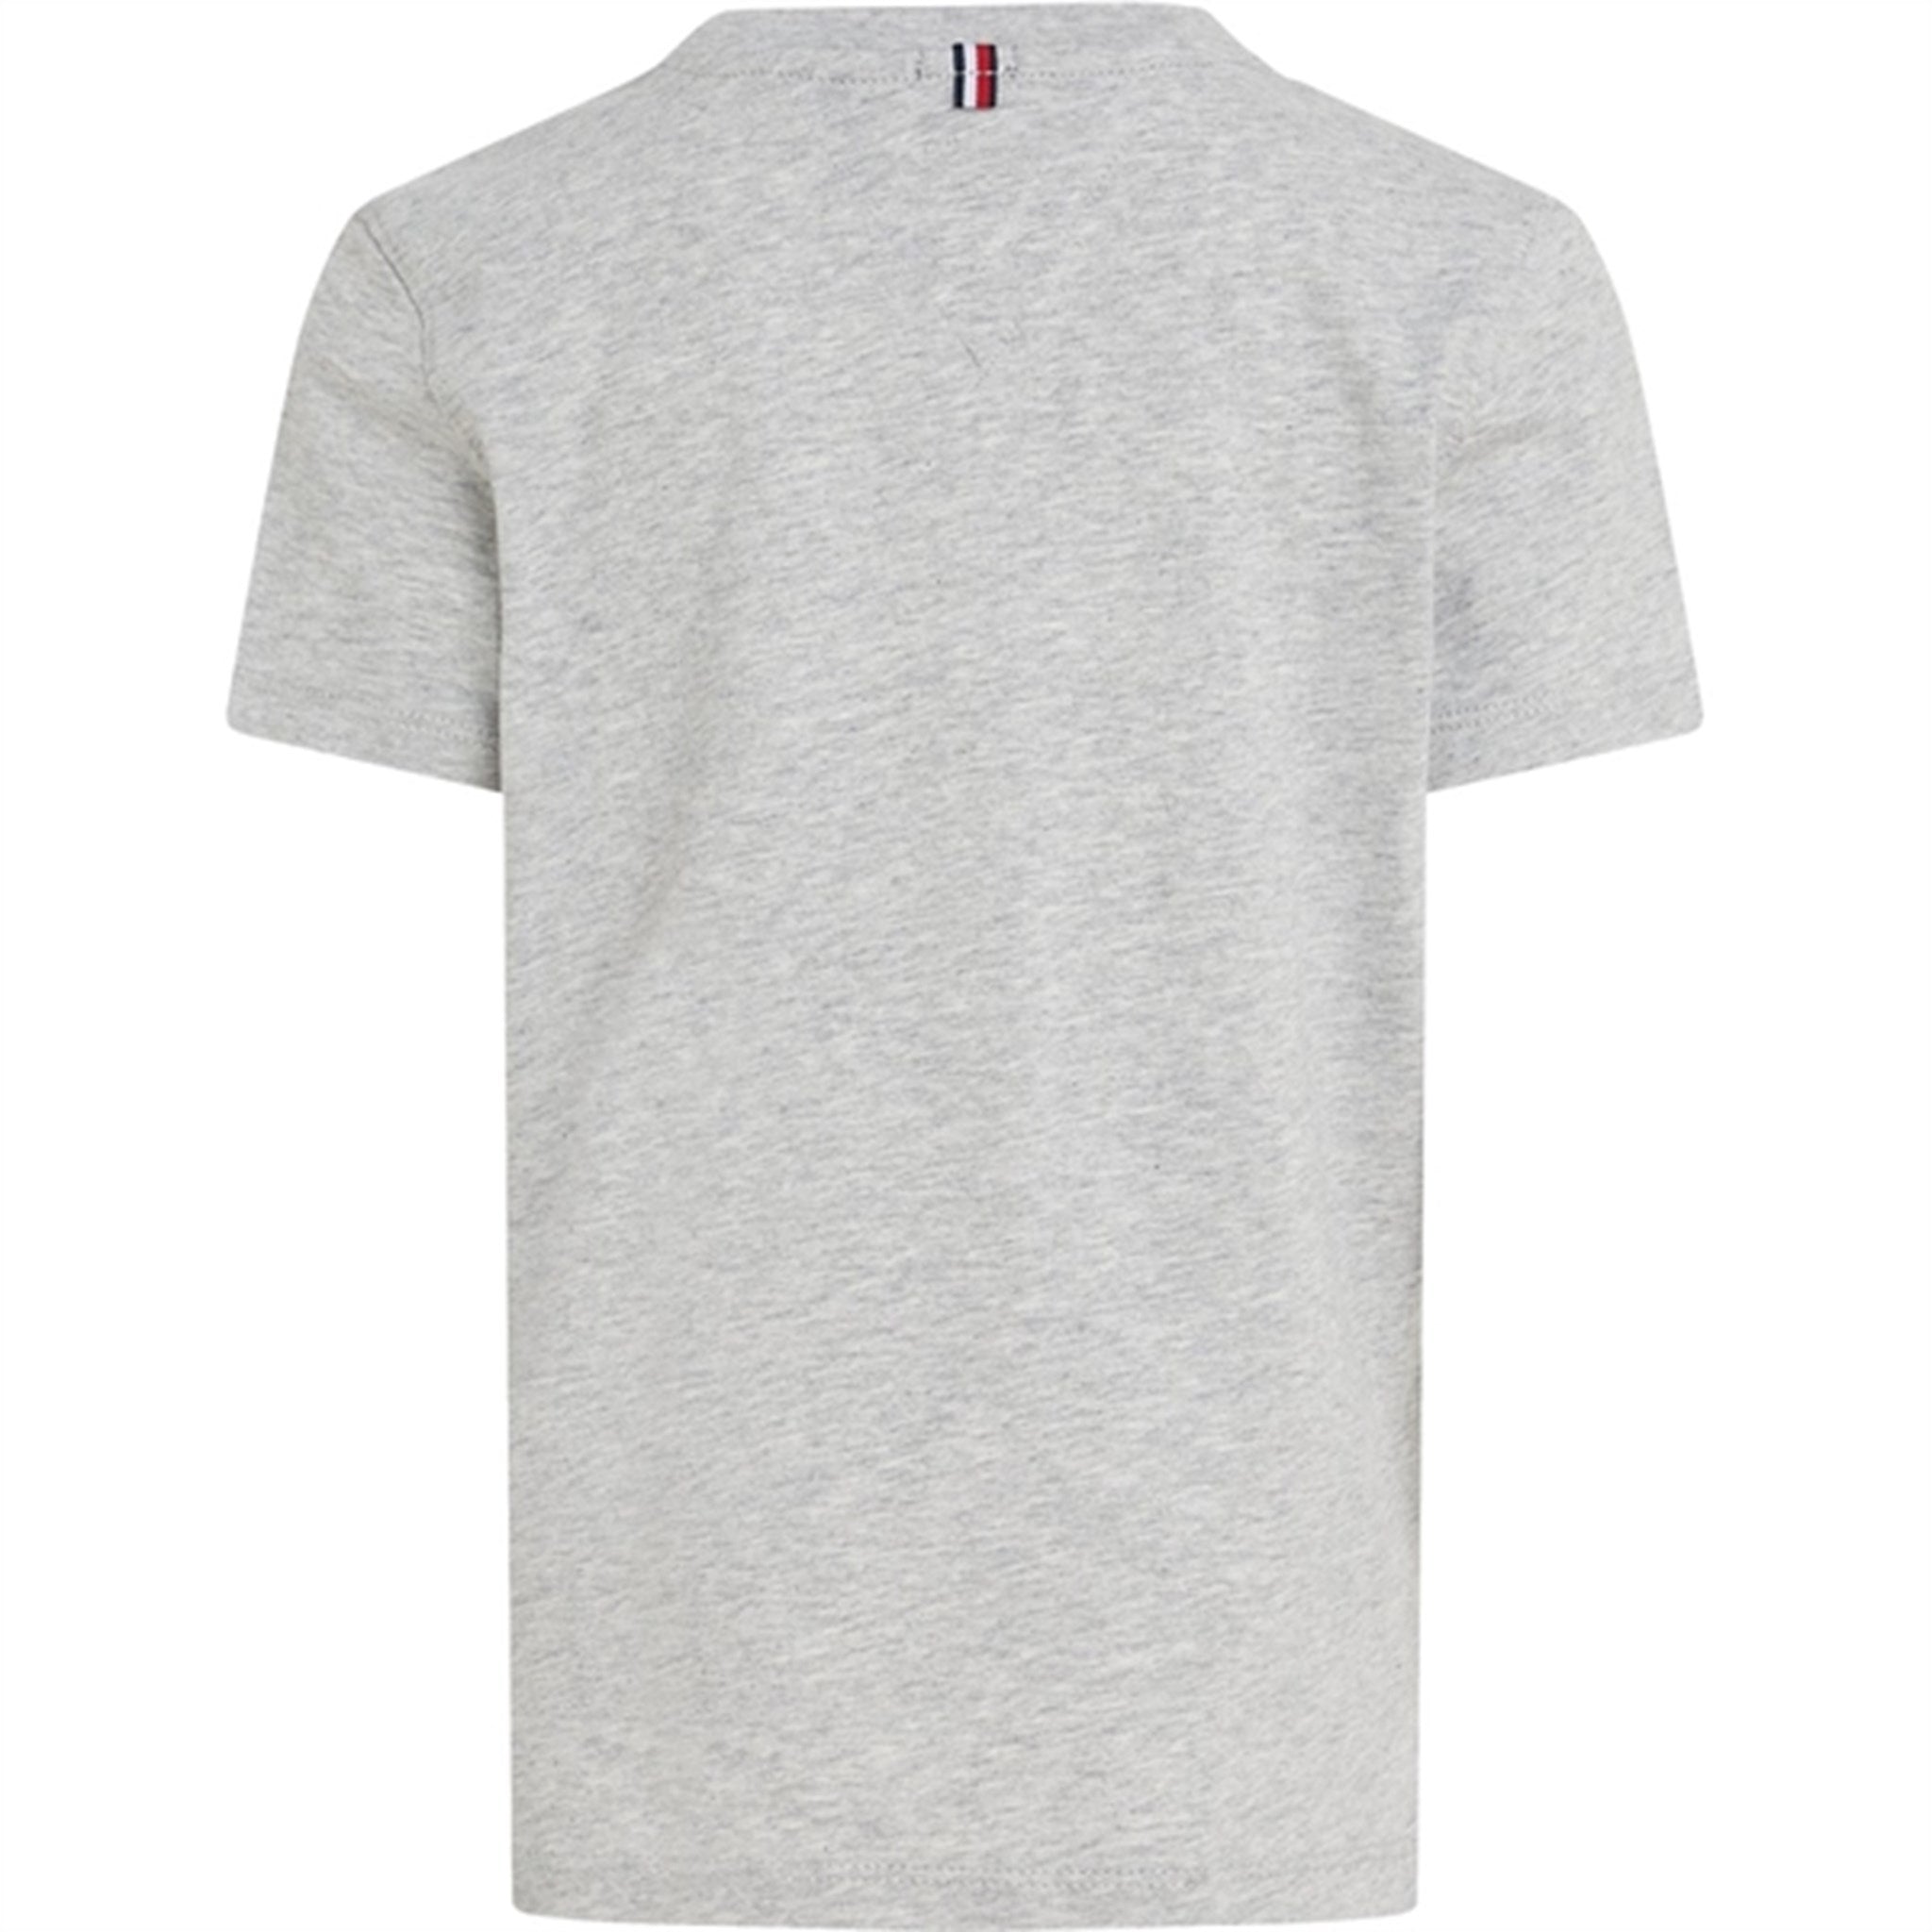 Tommy Hilfiger Boy Basic T-Shirt CN Grey Heather 6